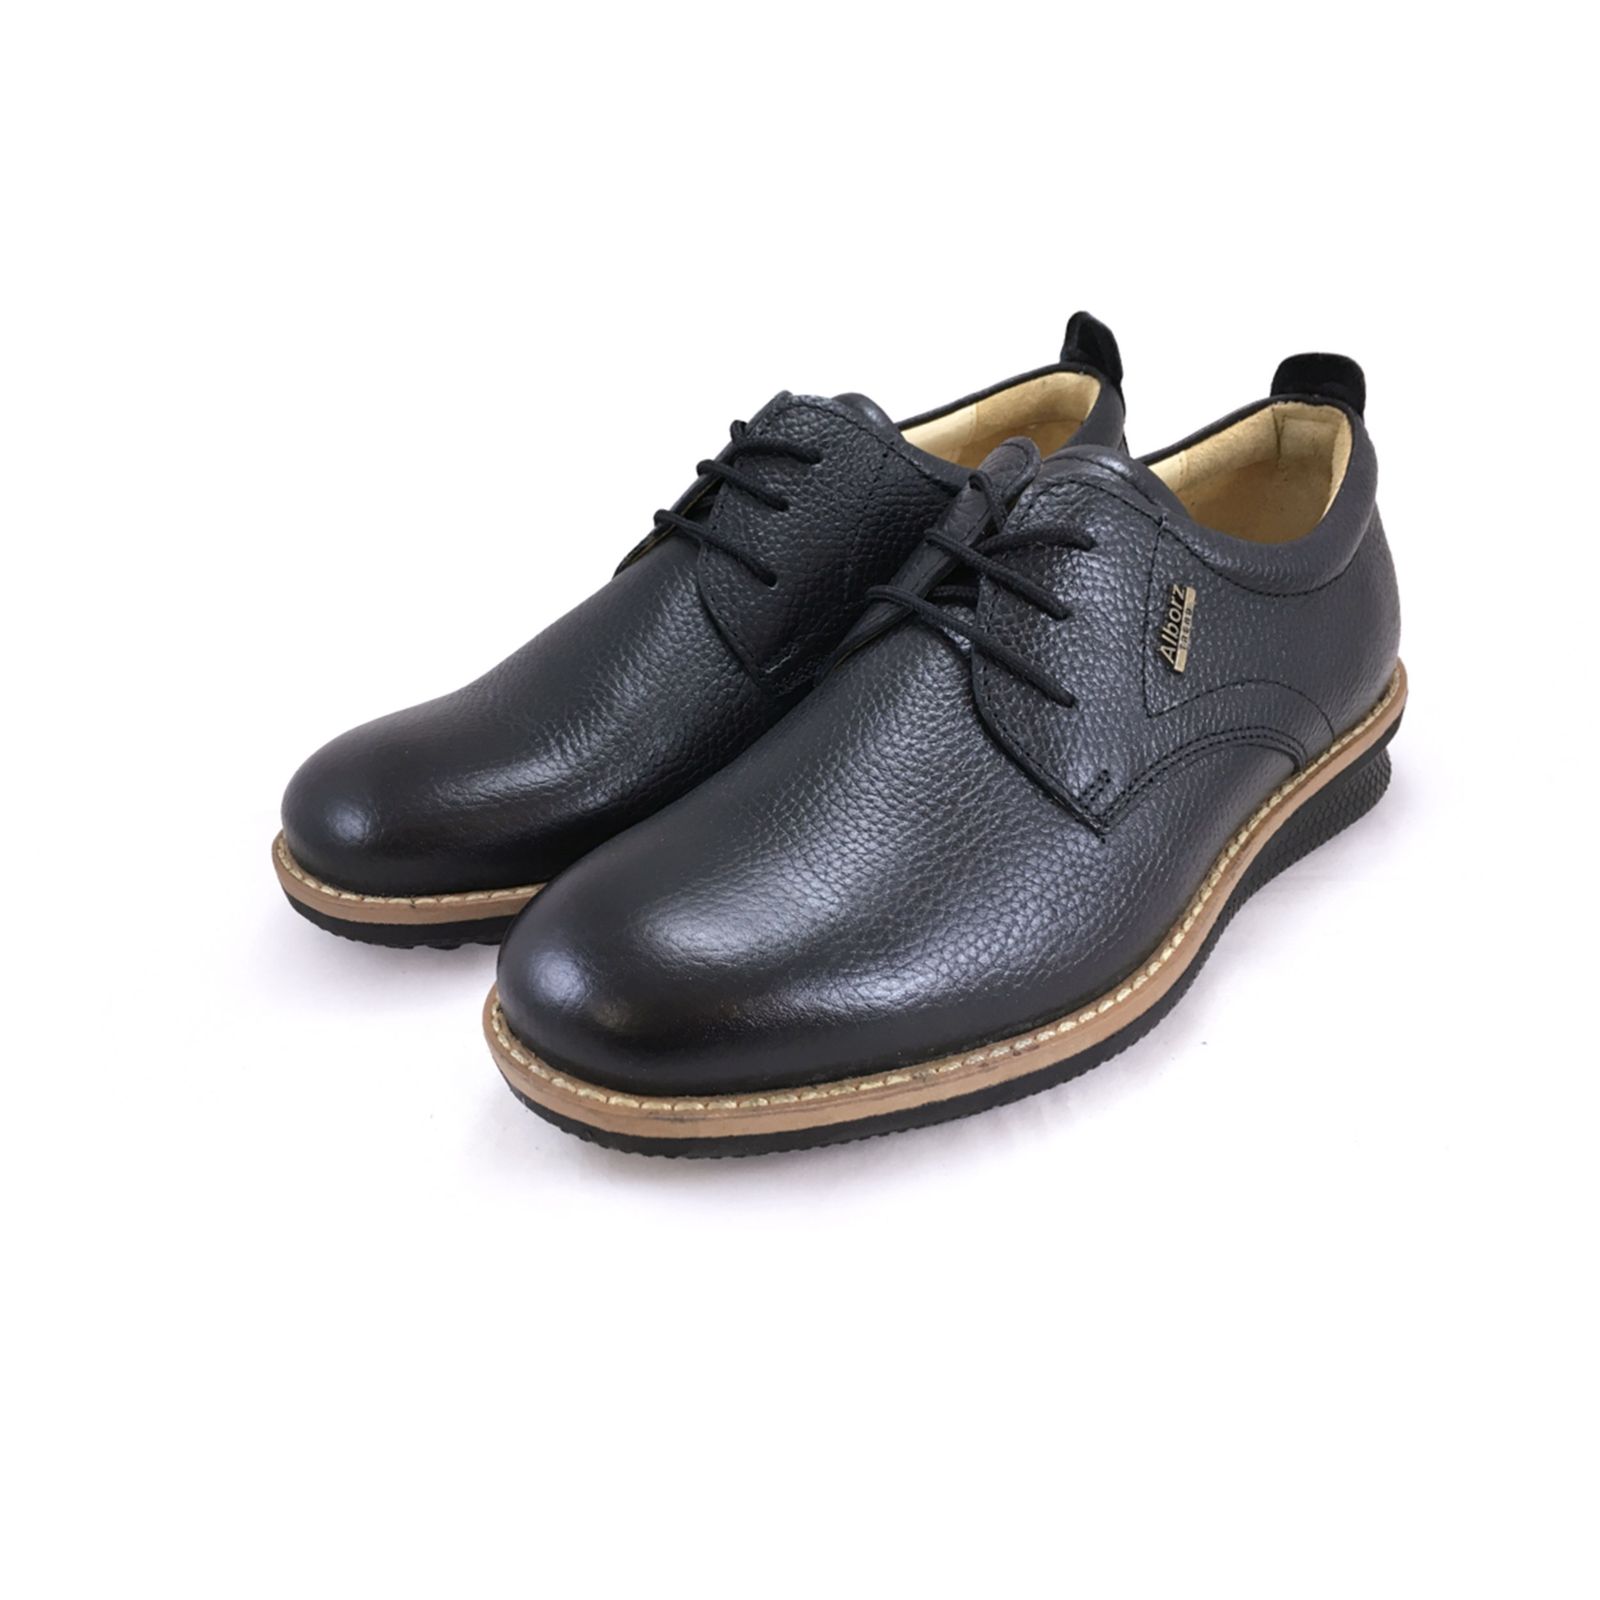 کفش روزمره مردانه شرکت کفش البرز مدل HMN کد 2924-3 -  - 2